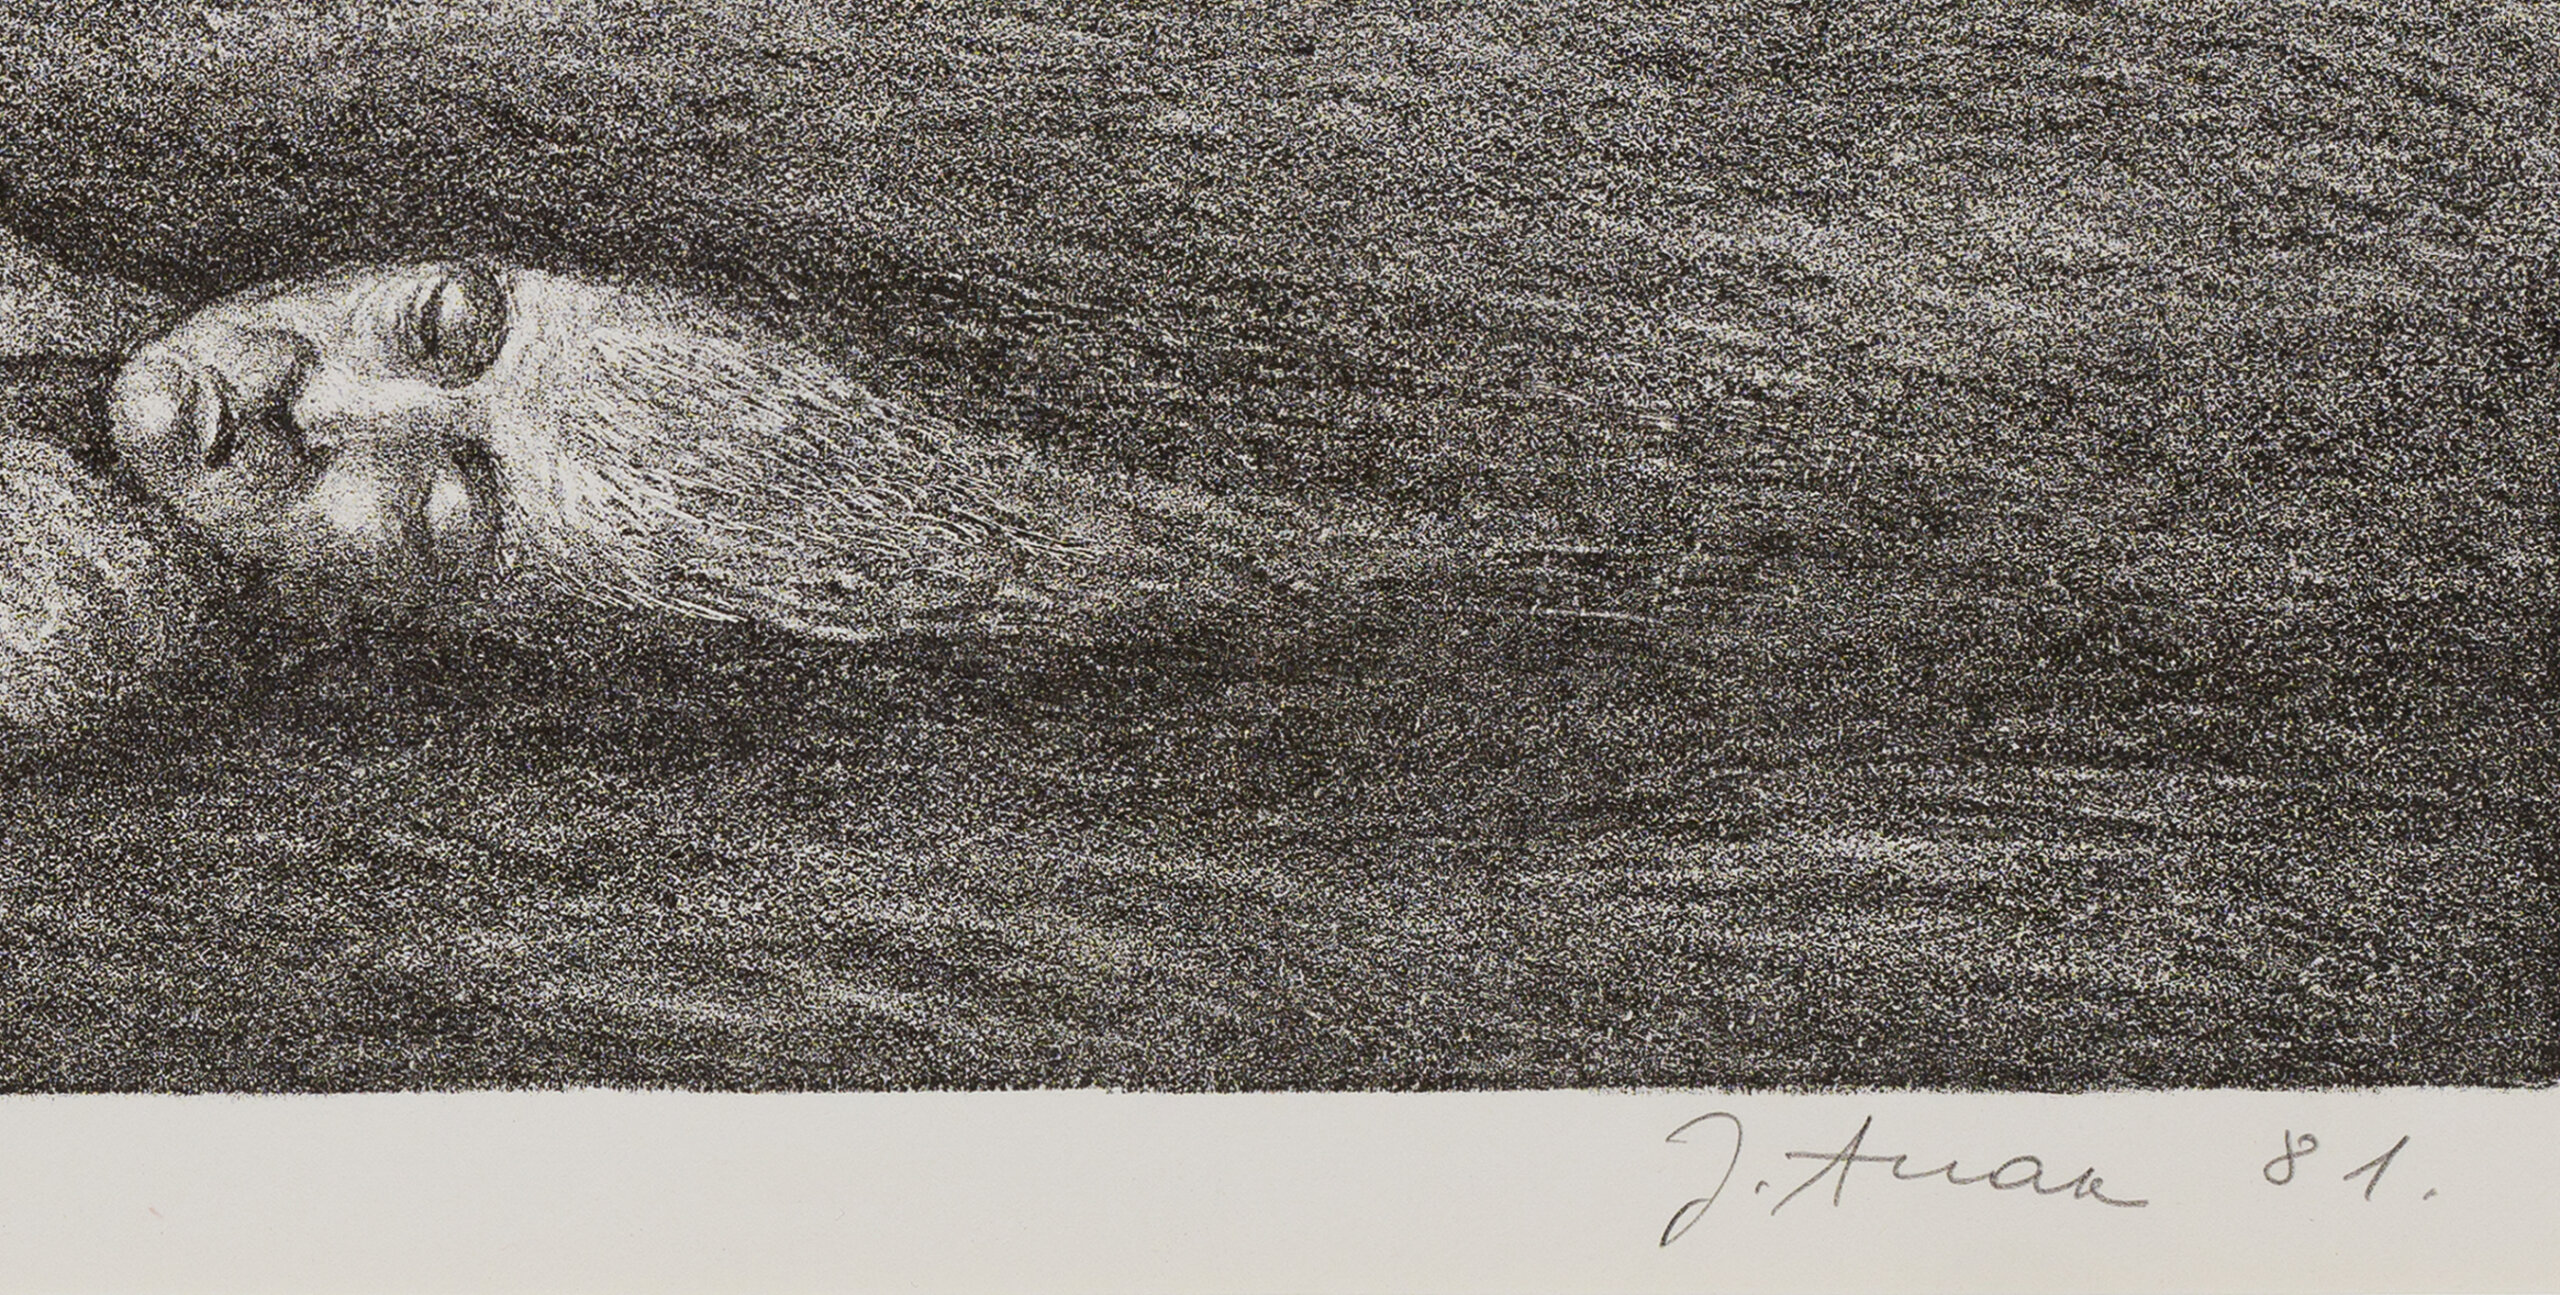 Jüri Arrak “Lõvid”, 1981. Plm 32 x 44 cm.